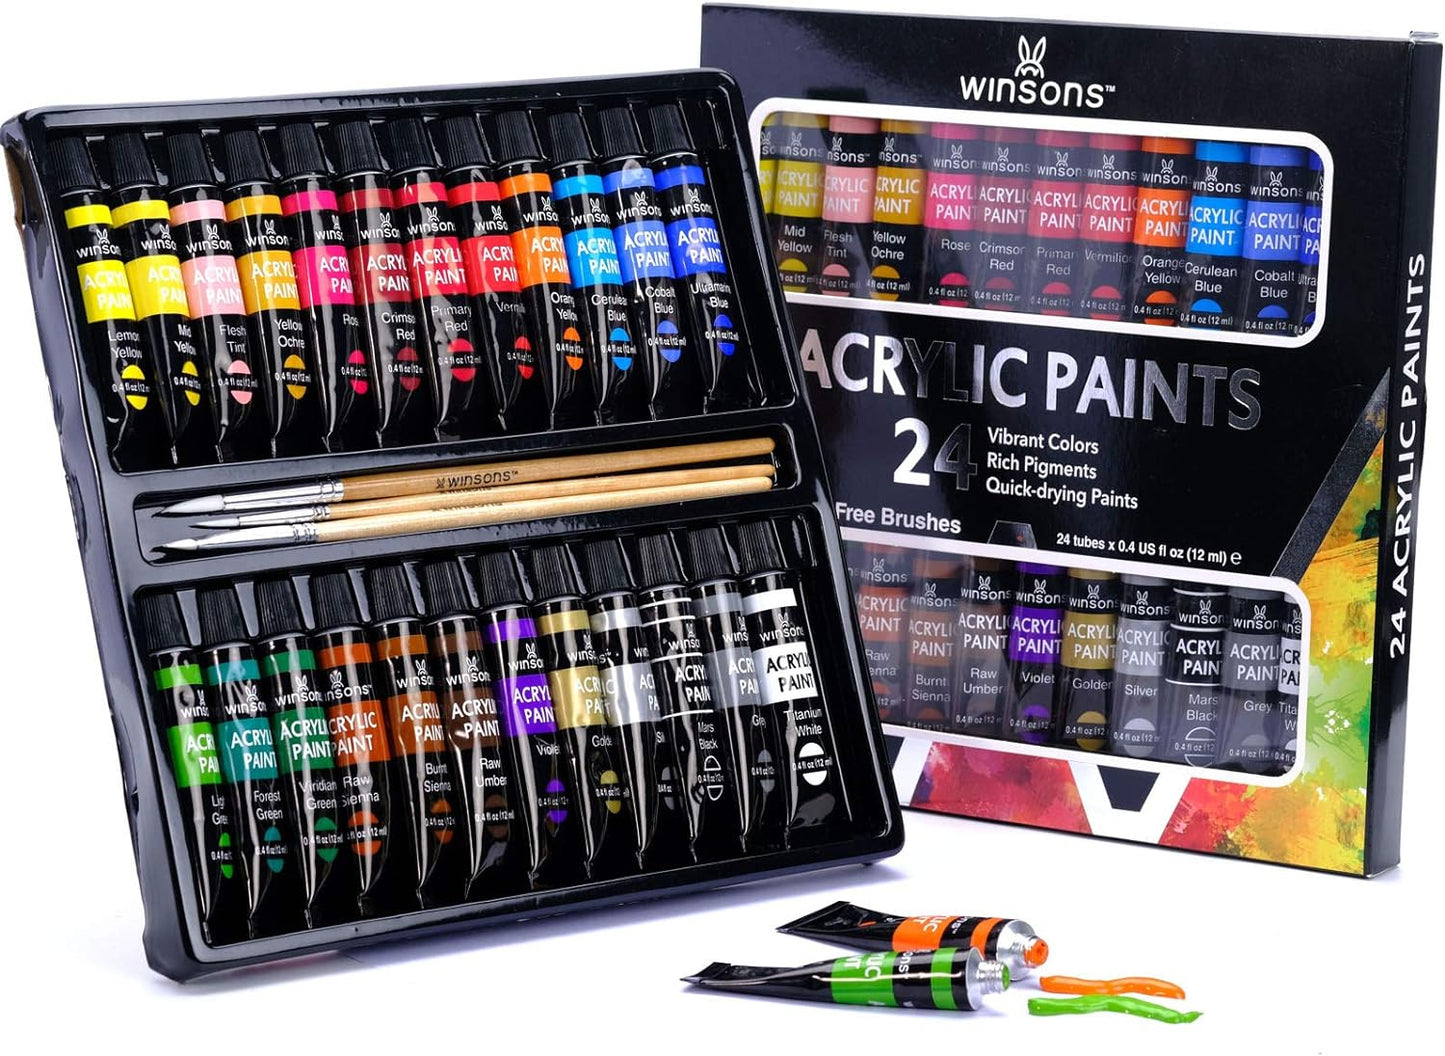 WINSONS Premium Acrylic Paint Set with 3 Bonus Brushes (12 mL/ 0.4 oz Tubes)